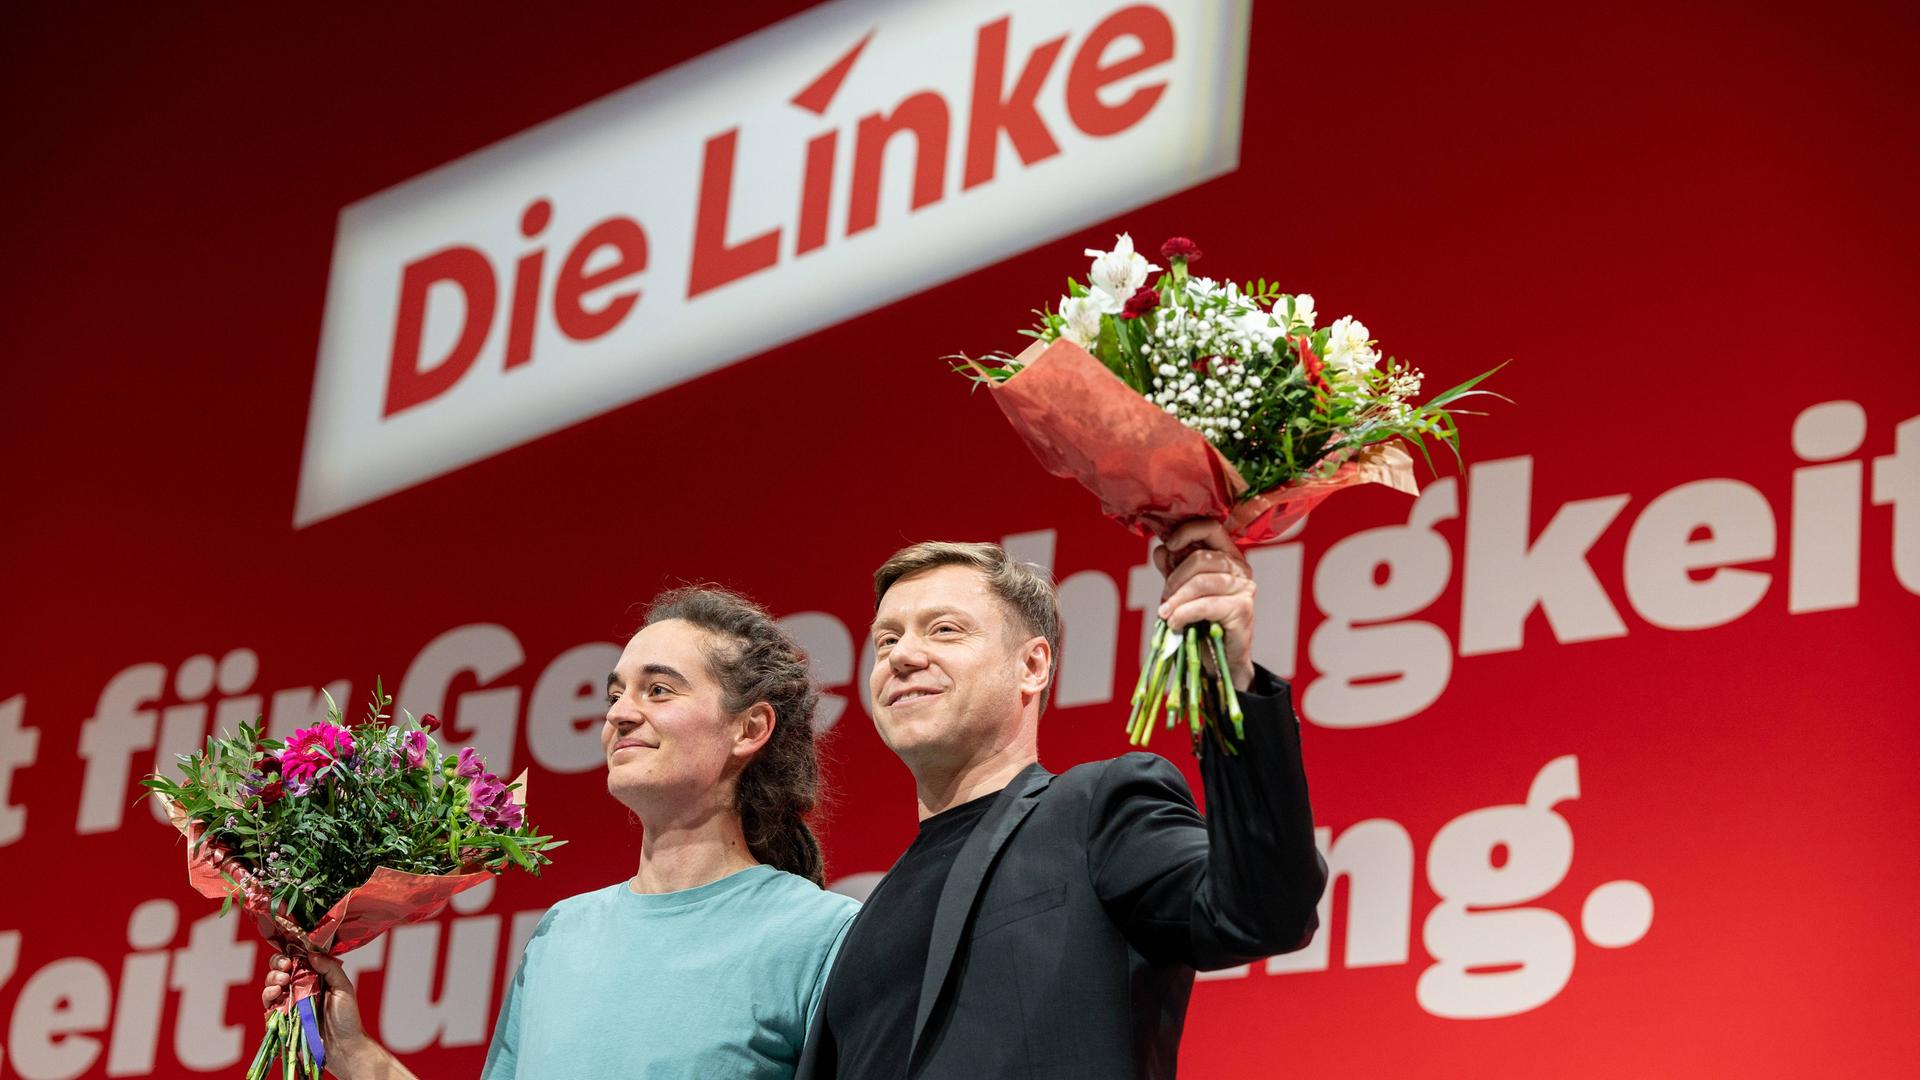 Carola Rackete und Martin Schirdewan stehen während des Bundesparteitages der Linken auf der Bühne und halten Blumensträuße in der Hand.